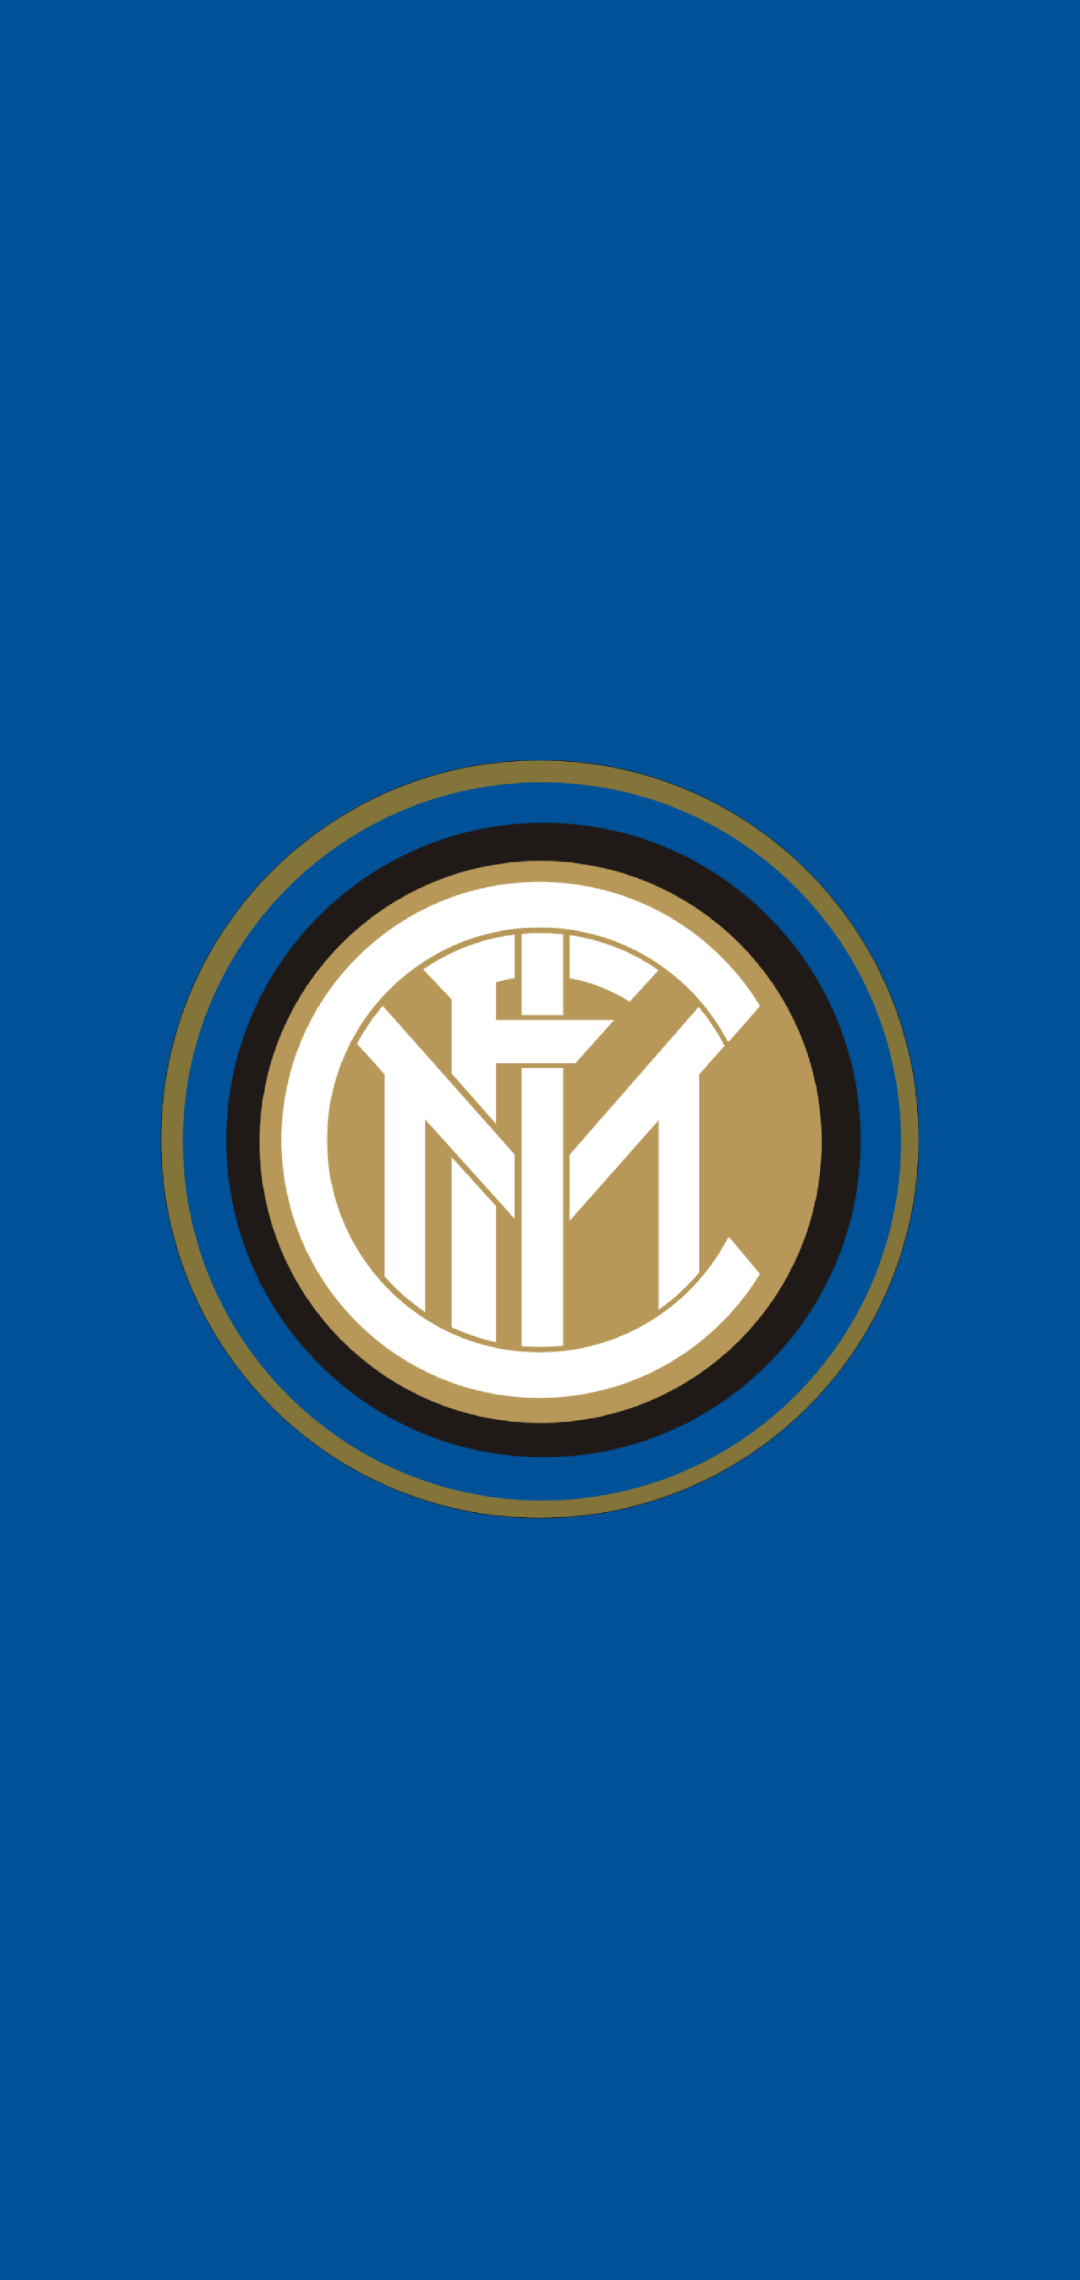 インテル F C Internazionale Milano Aquos Sense5g スマホ壁紙 待ち受け スマラン